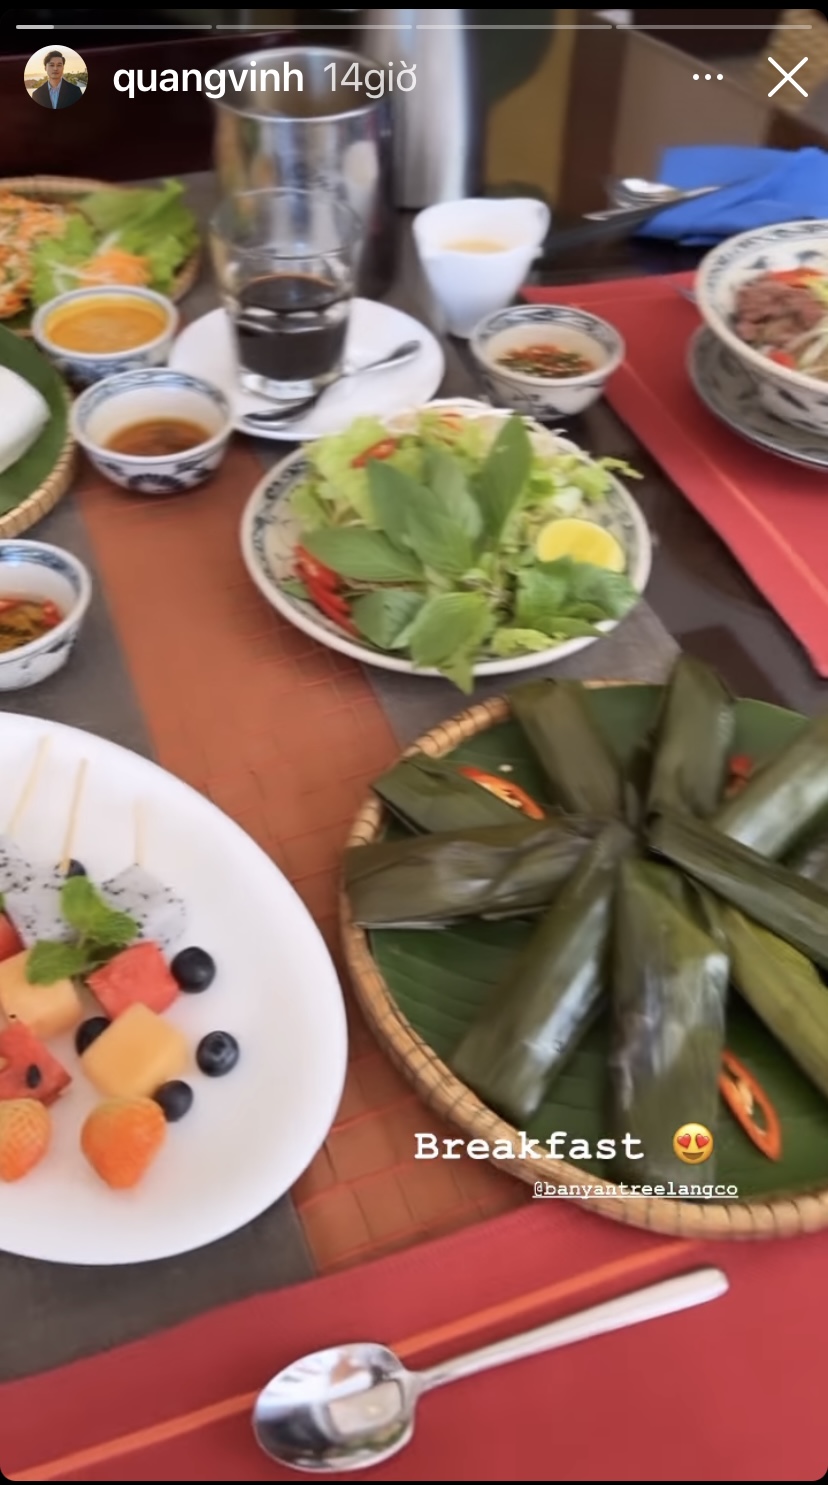 Bánh khoái, bánh bột lọc, bún bò Huế... là những món đặc sản cố đô Huế xuất hiện trong bữa sáng hôm nay của ca sĩ Quang Vinh.